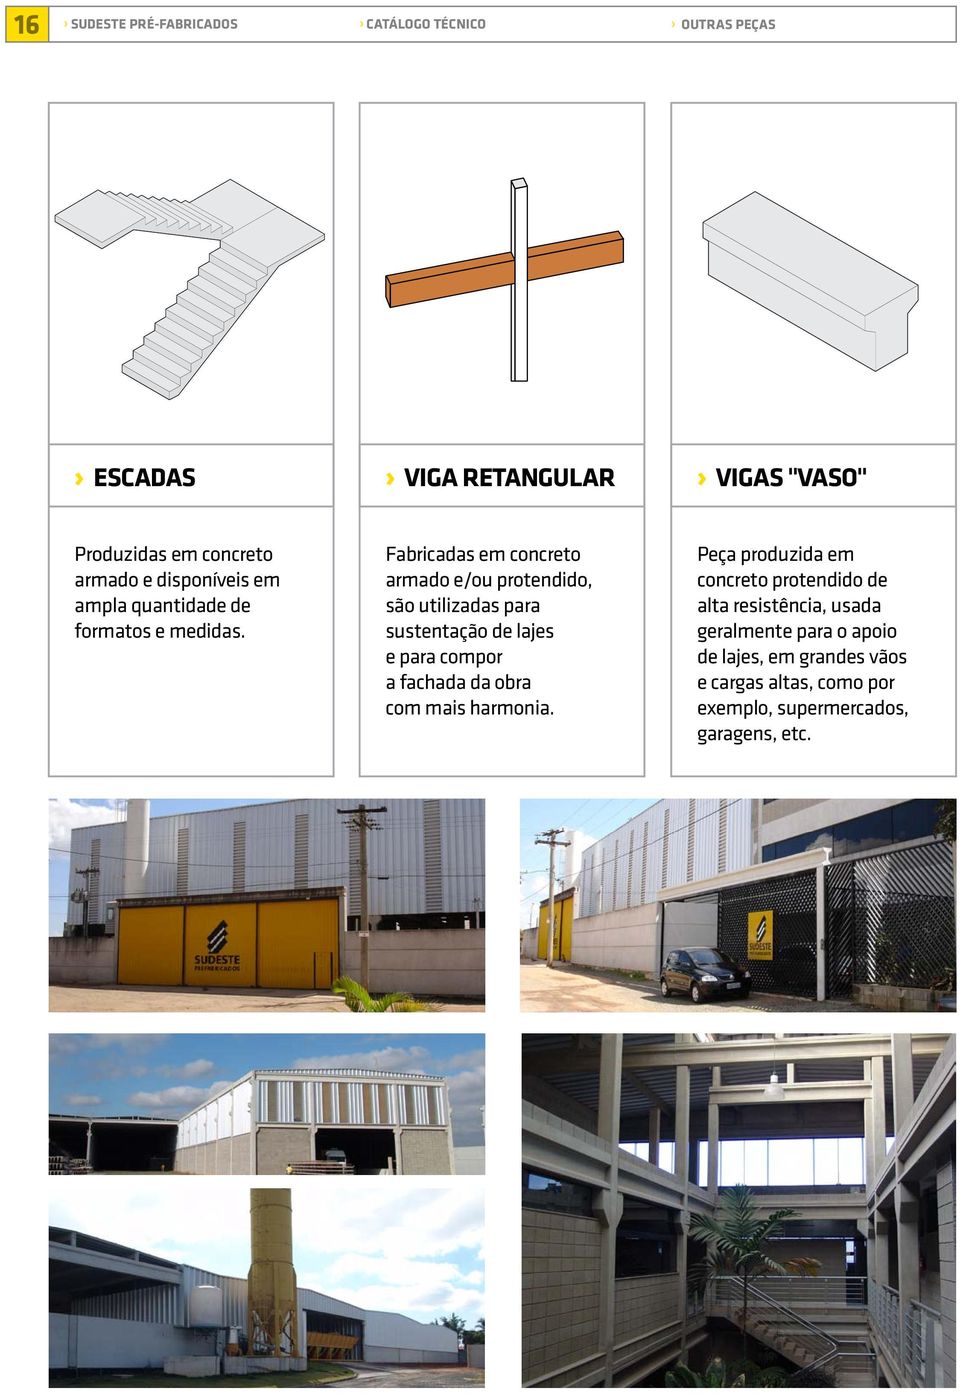 Fabricadas em concreto armado e/ou protendido, são utilizadas para sustentação de lajes e para compor a fachada da obra com